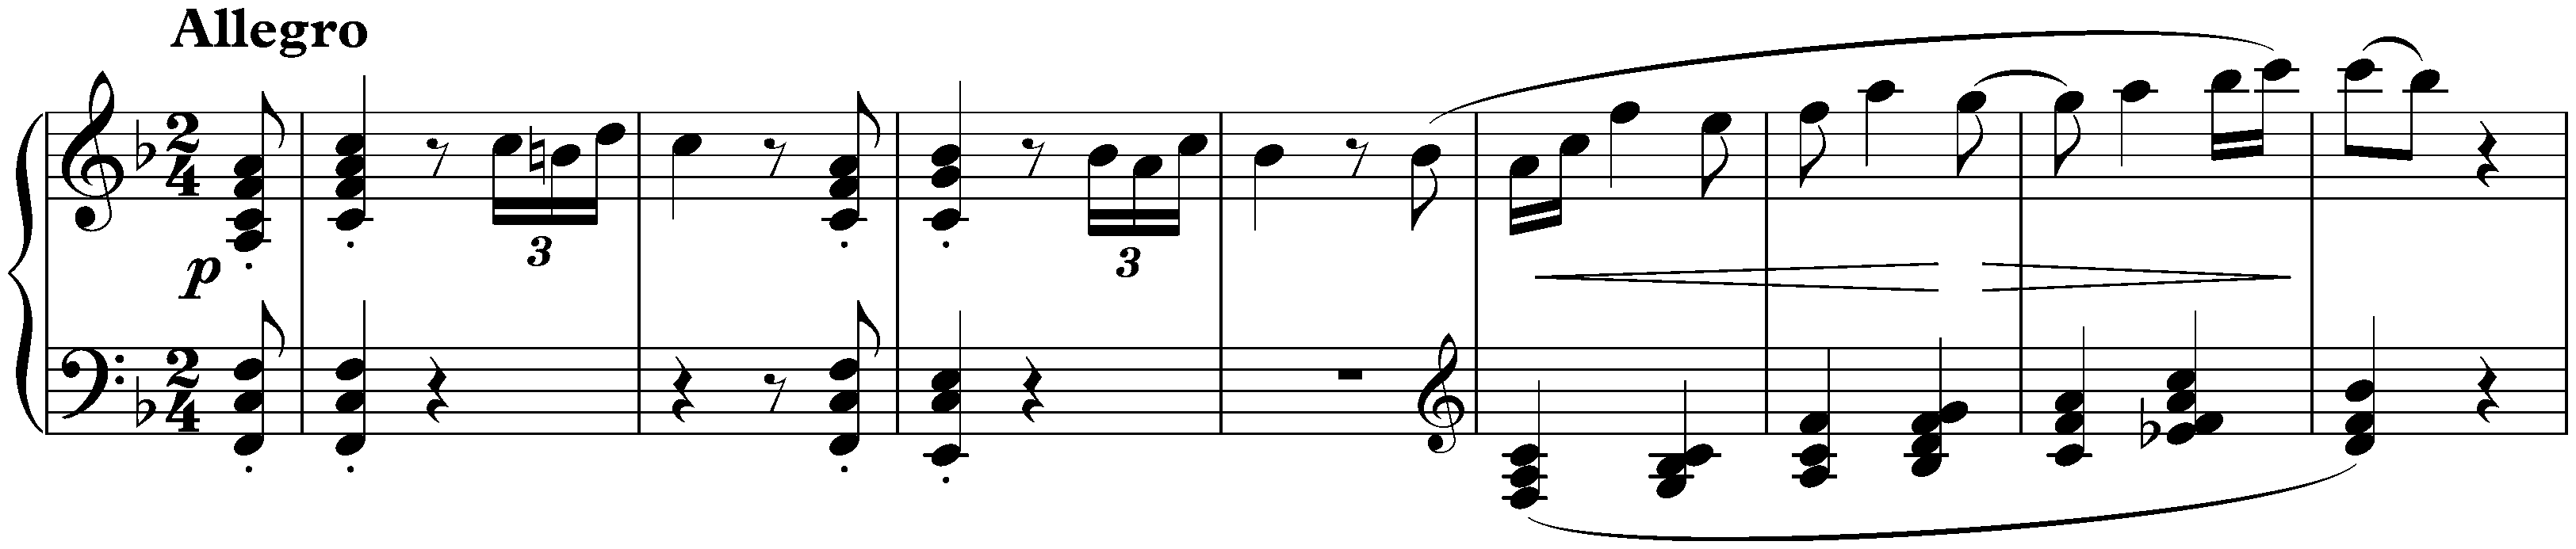 Sonata no. 6 in F major, op. 10 no. 2; 1. Allegro